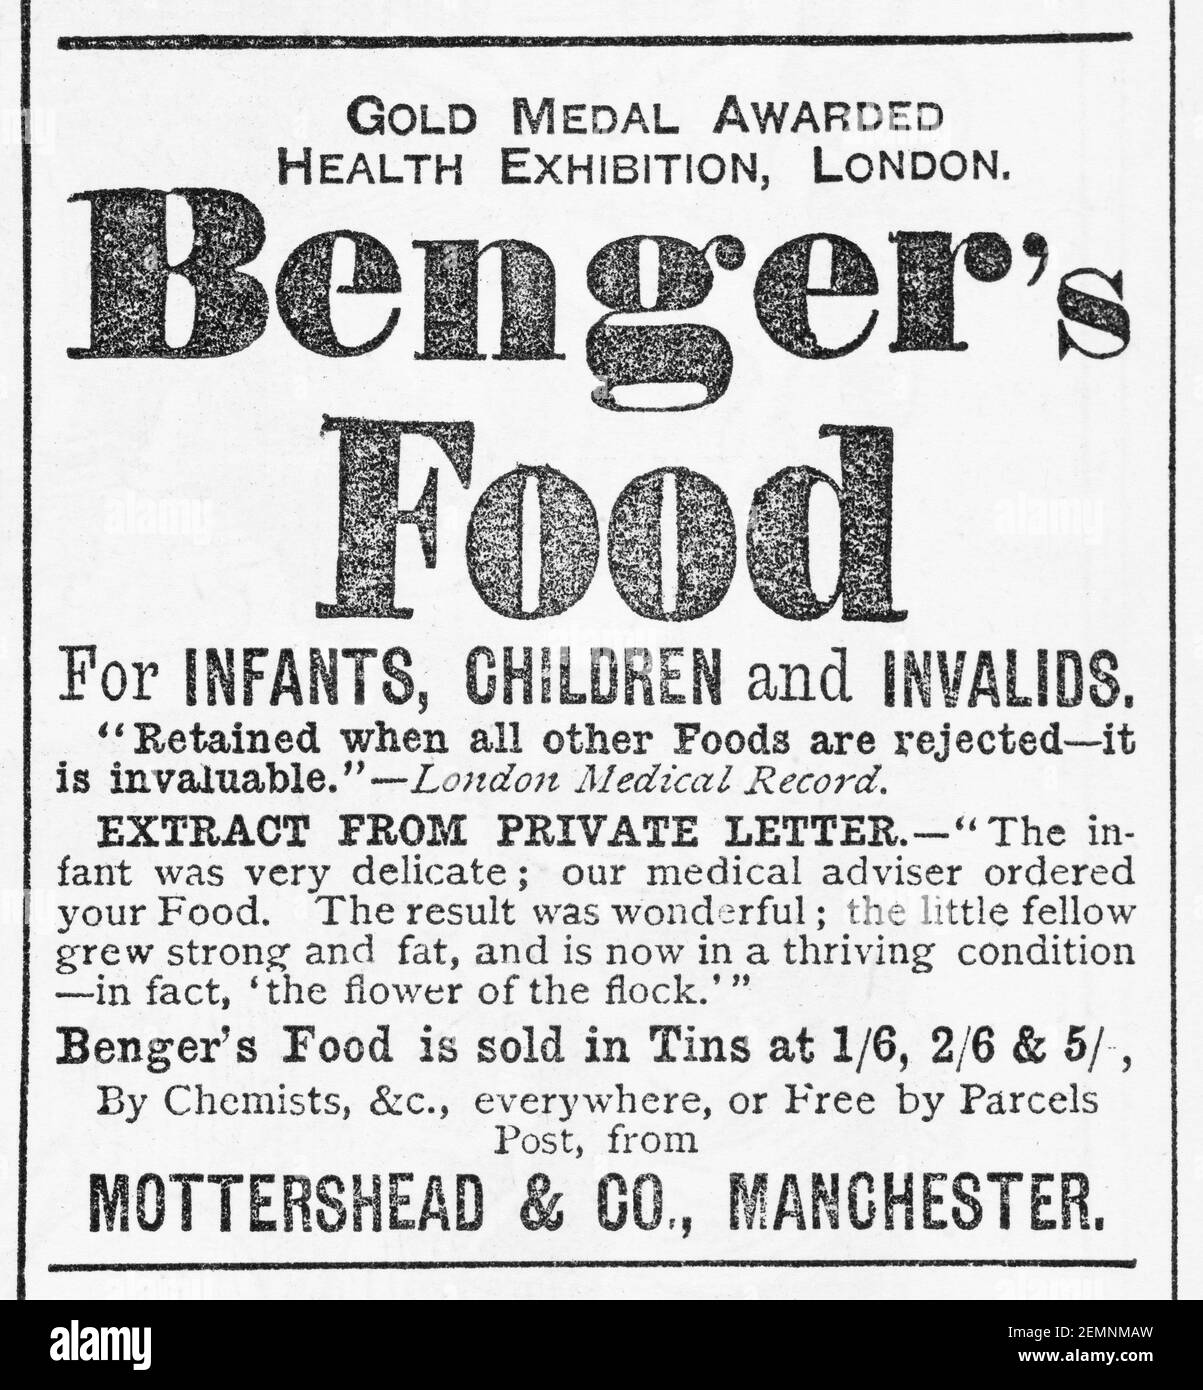 Viejo anuncio de comida para bebés de Benger victoriano de 1887 - en los días anteriores a los estándares de publicidad. La vieja publicidad de comida victoriana, la historia de la publicidad. Foto de stock